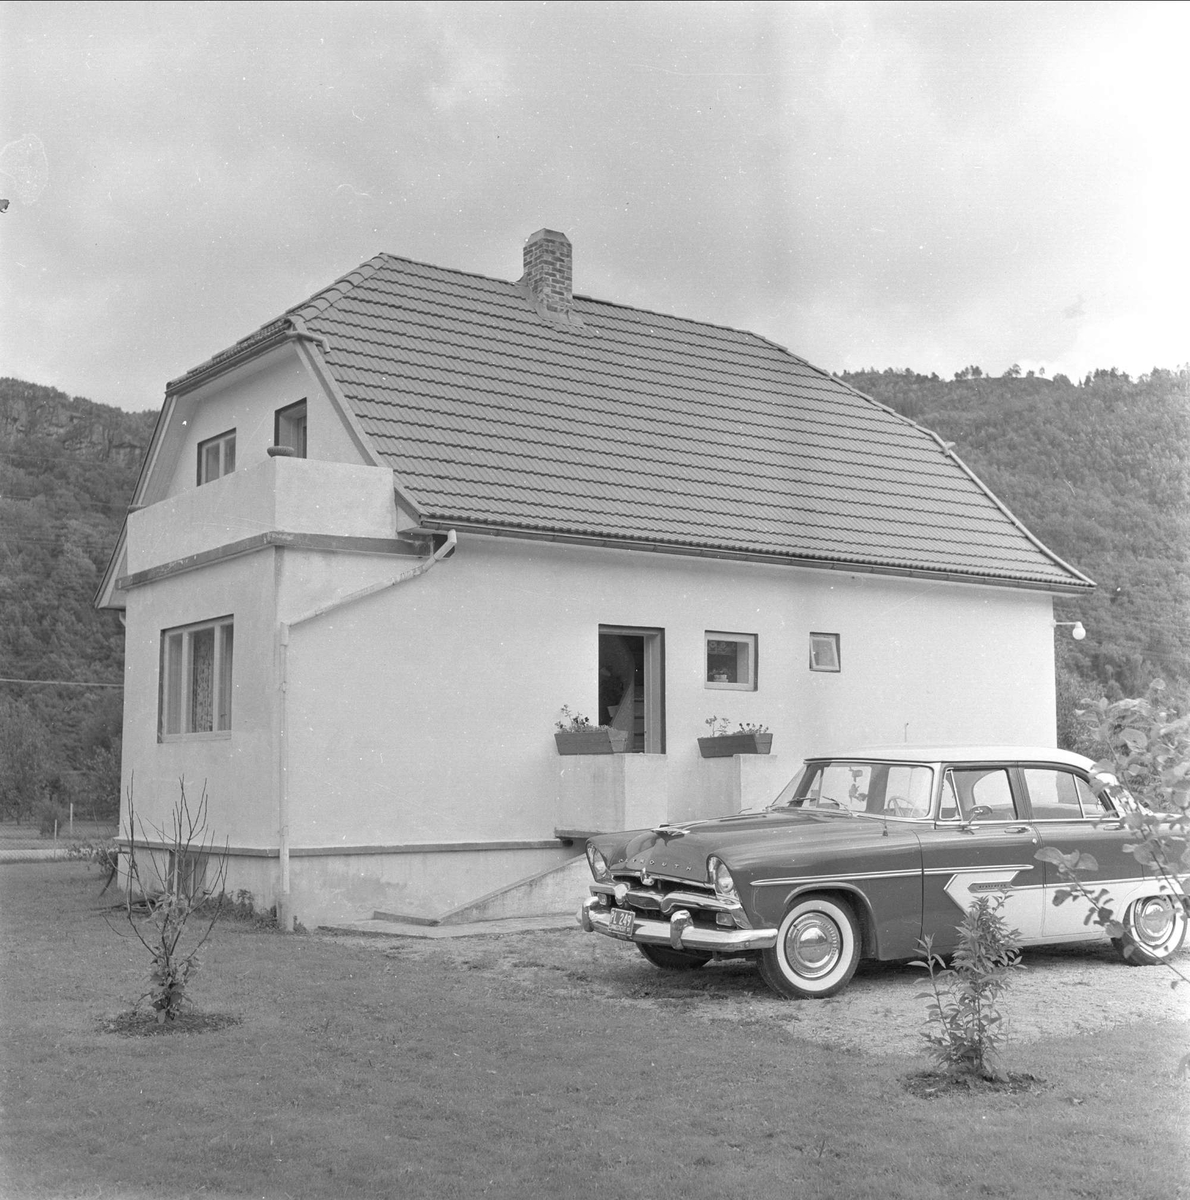 Kvinesdal, Vest-Agder, august 1958. Norskamerikanere i Kvinesdal. Bil foran hus.